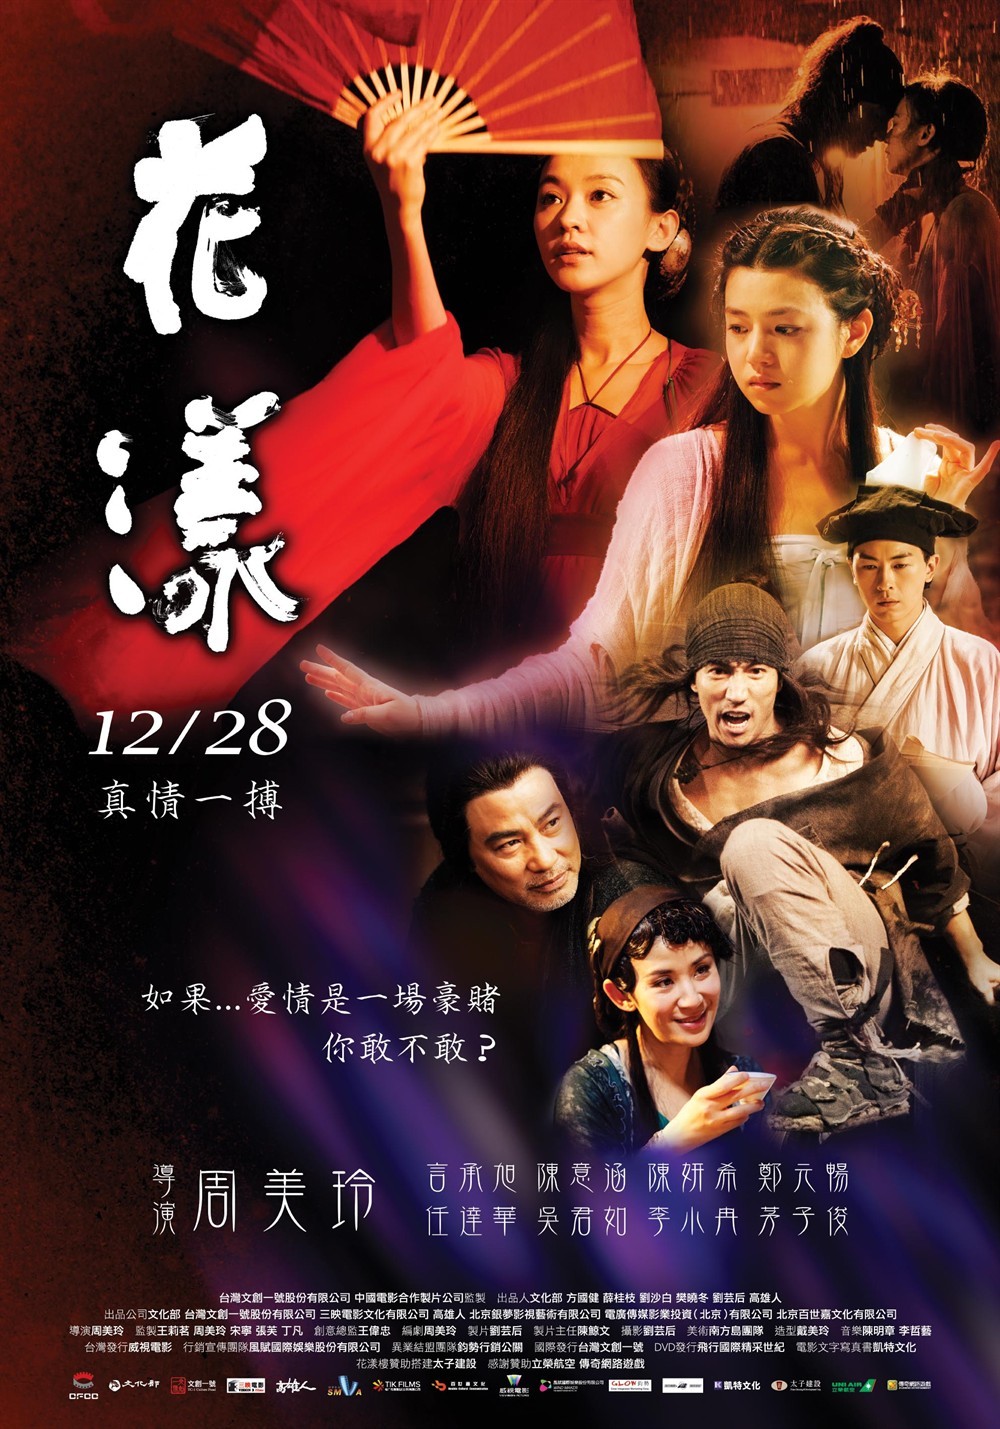 《花漾》是由周美玲编剧并执导的古装爱情剧,由陈意涵,陈妍希,言承旭